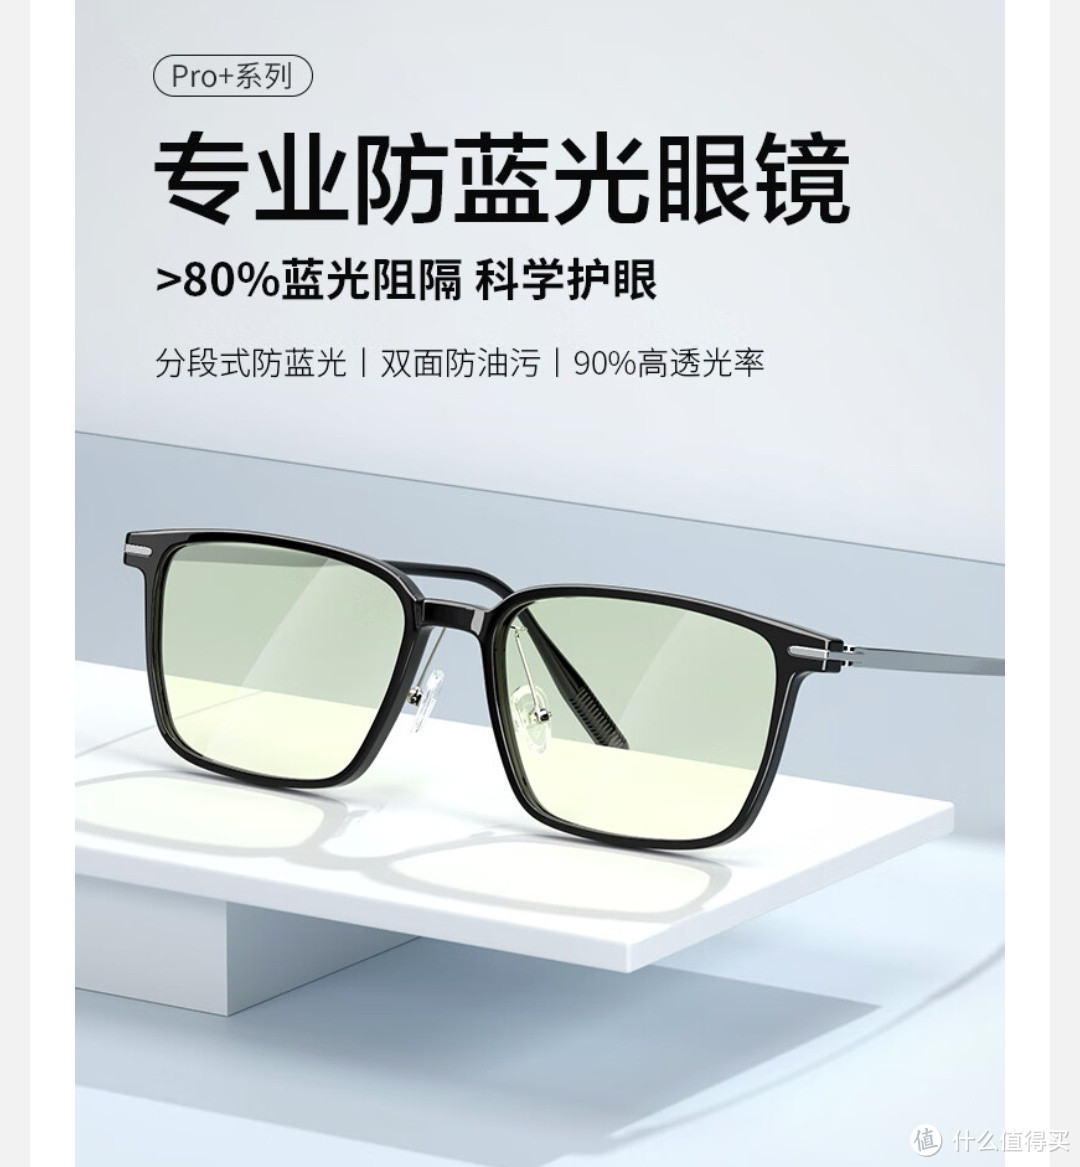 看懂配镜参数，在京东选择更适合的眼镜